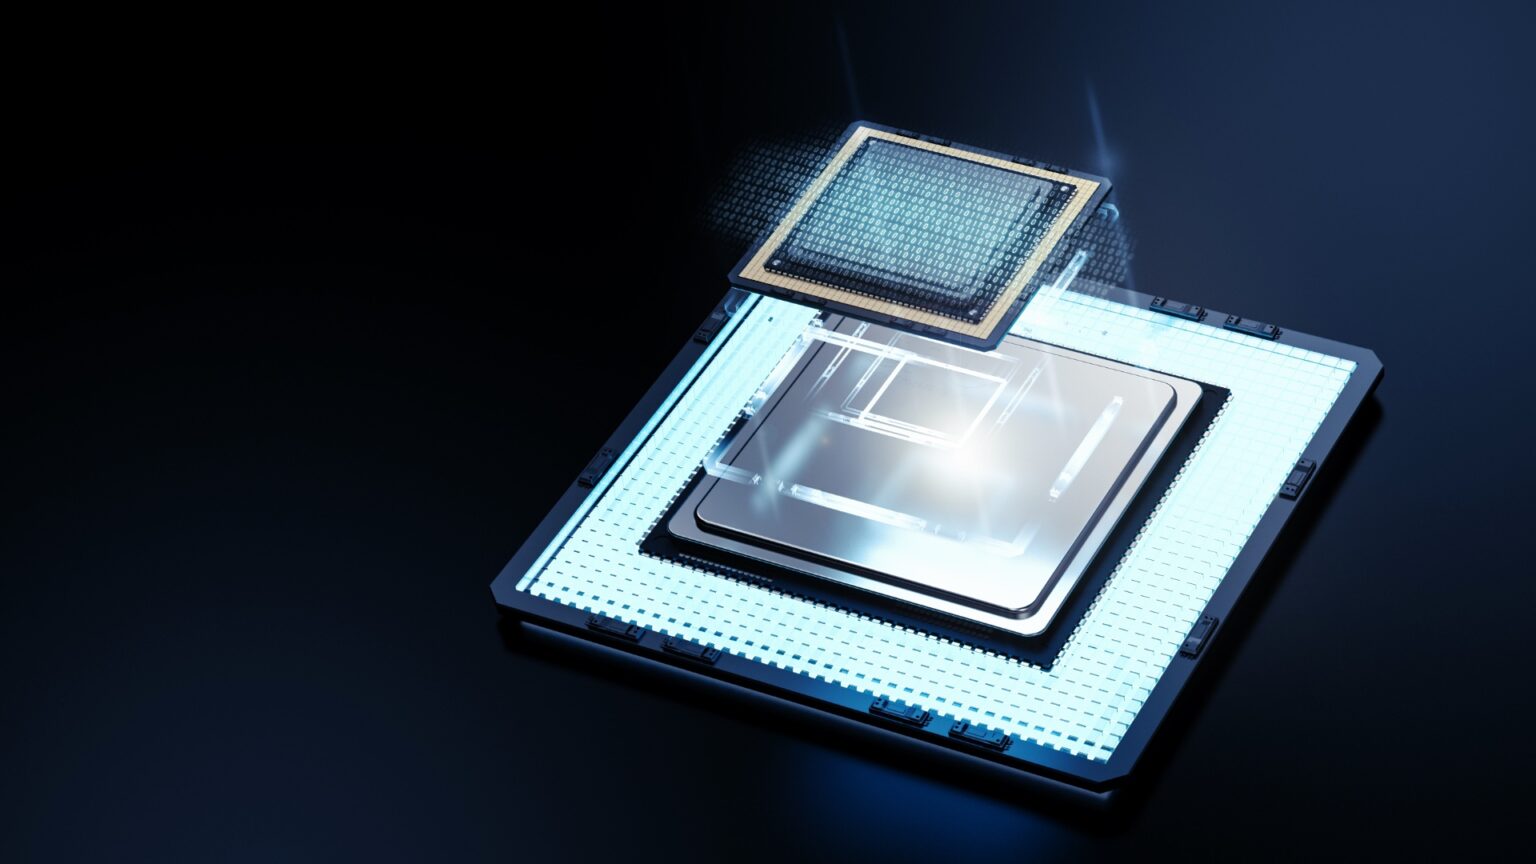 Equinix planuje rozwój w kierunku komputerów kwantowych. Firma nawiązała współpracę z innowatorem w tej dziedzinie